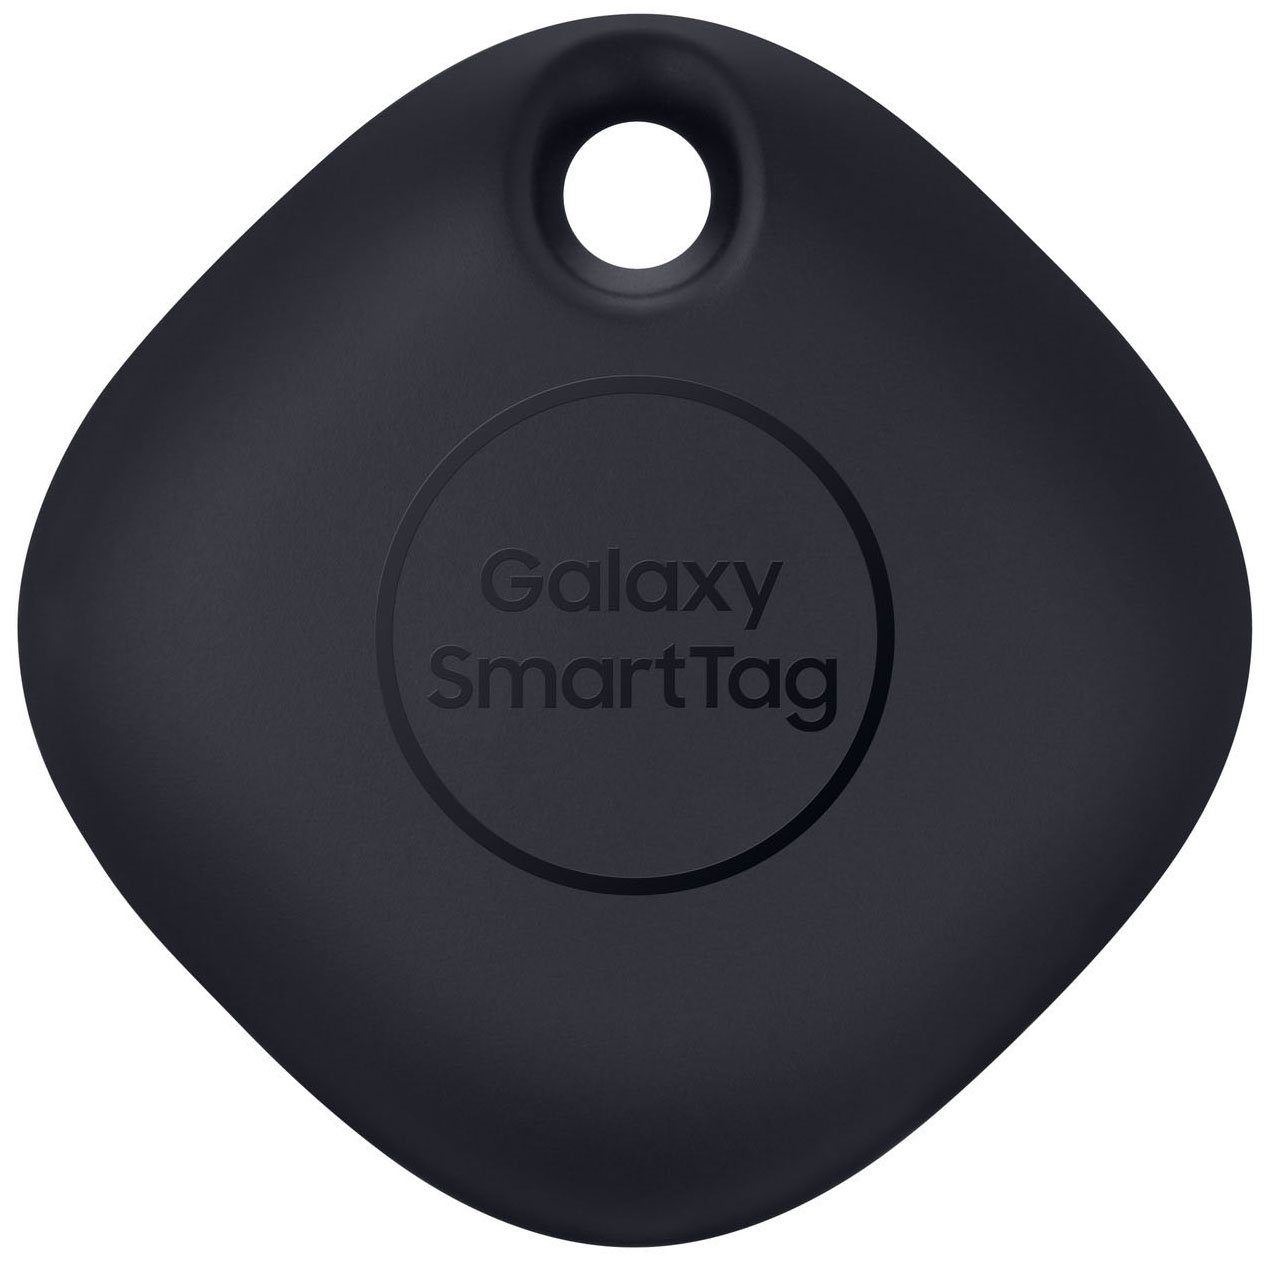 Samsung SmartTag EI-T5300 GPS-Tracker online kaufen | OTTO